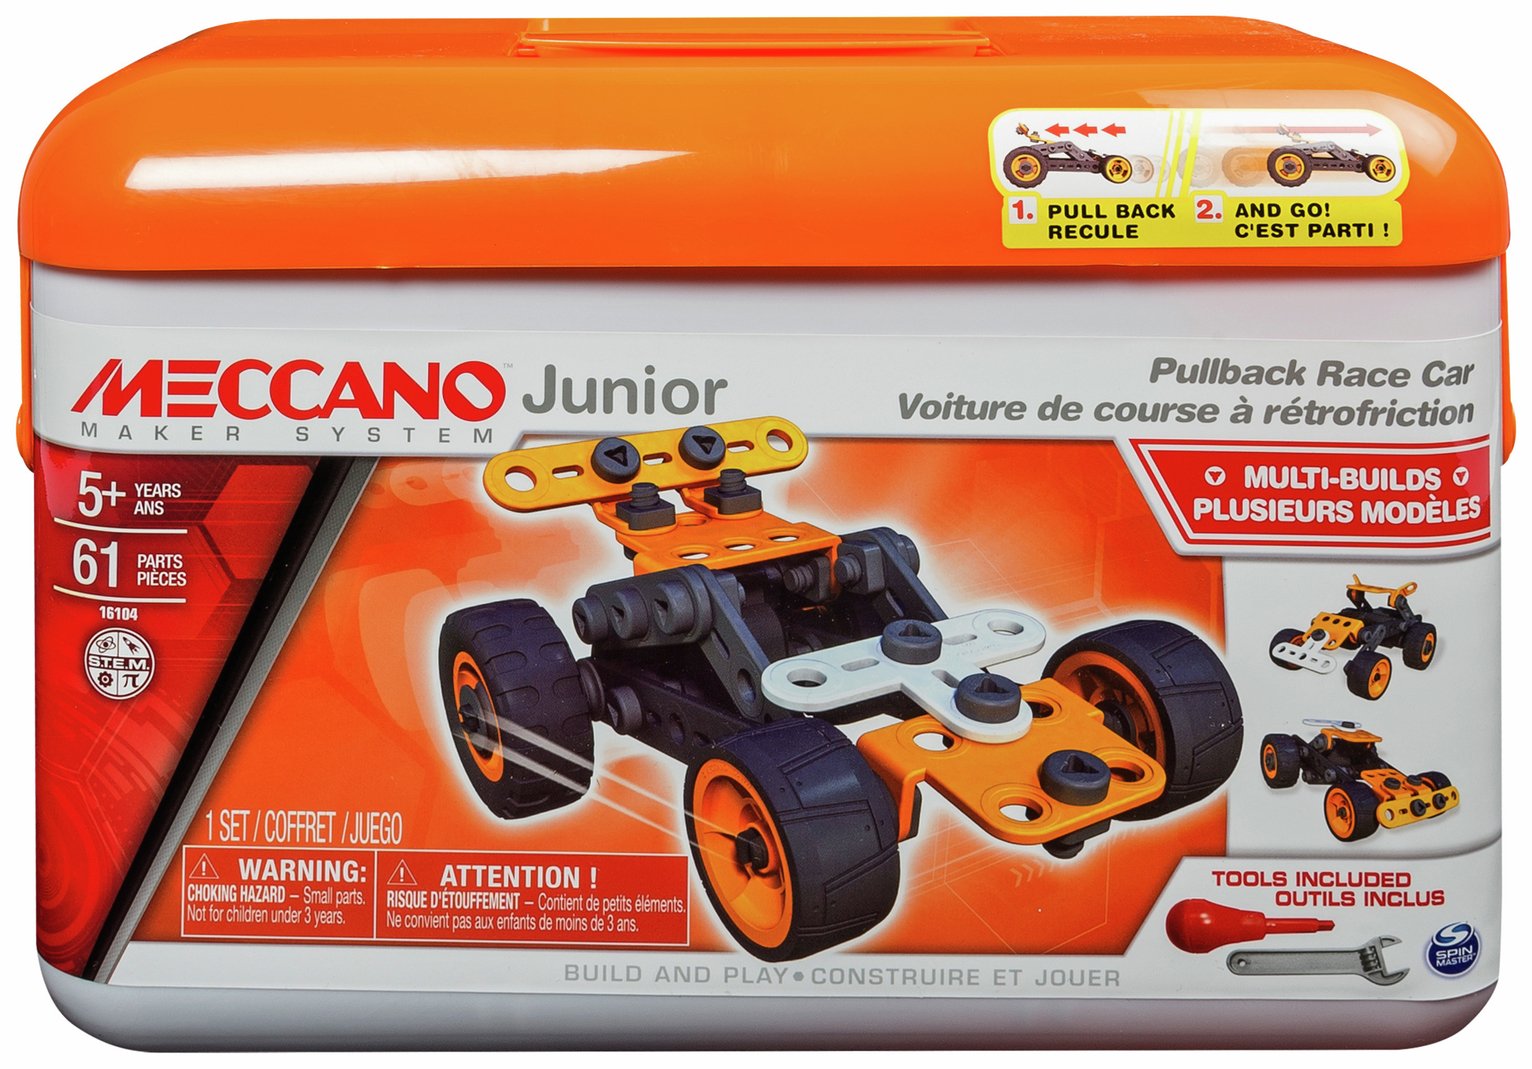 Meccano Junior Tool Box